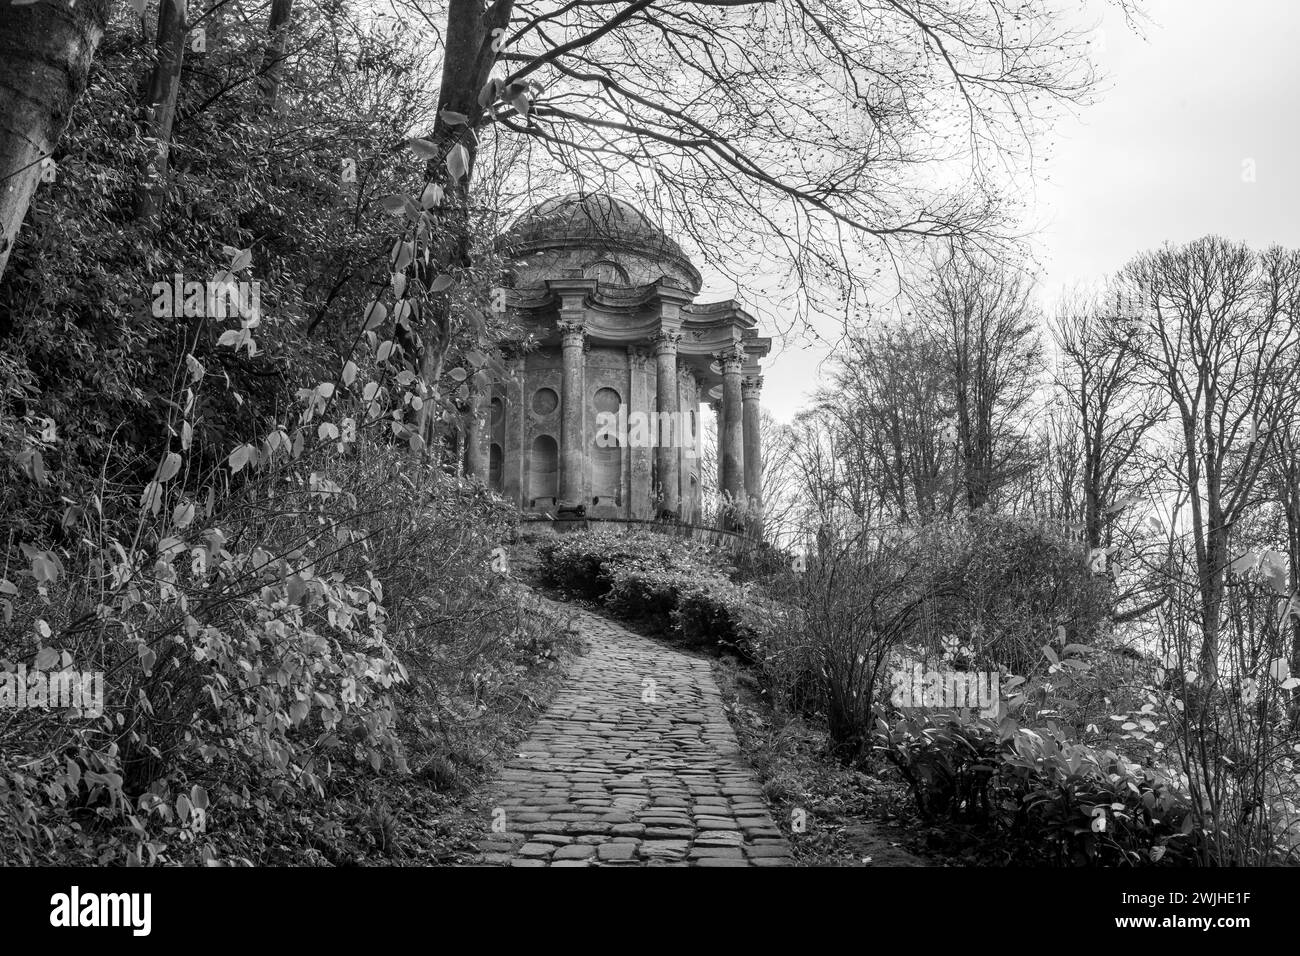 Photo of the Temple Of Apollo in Stourhead Gardens. Stock Photo